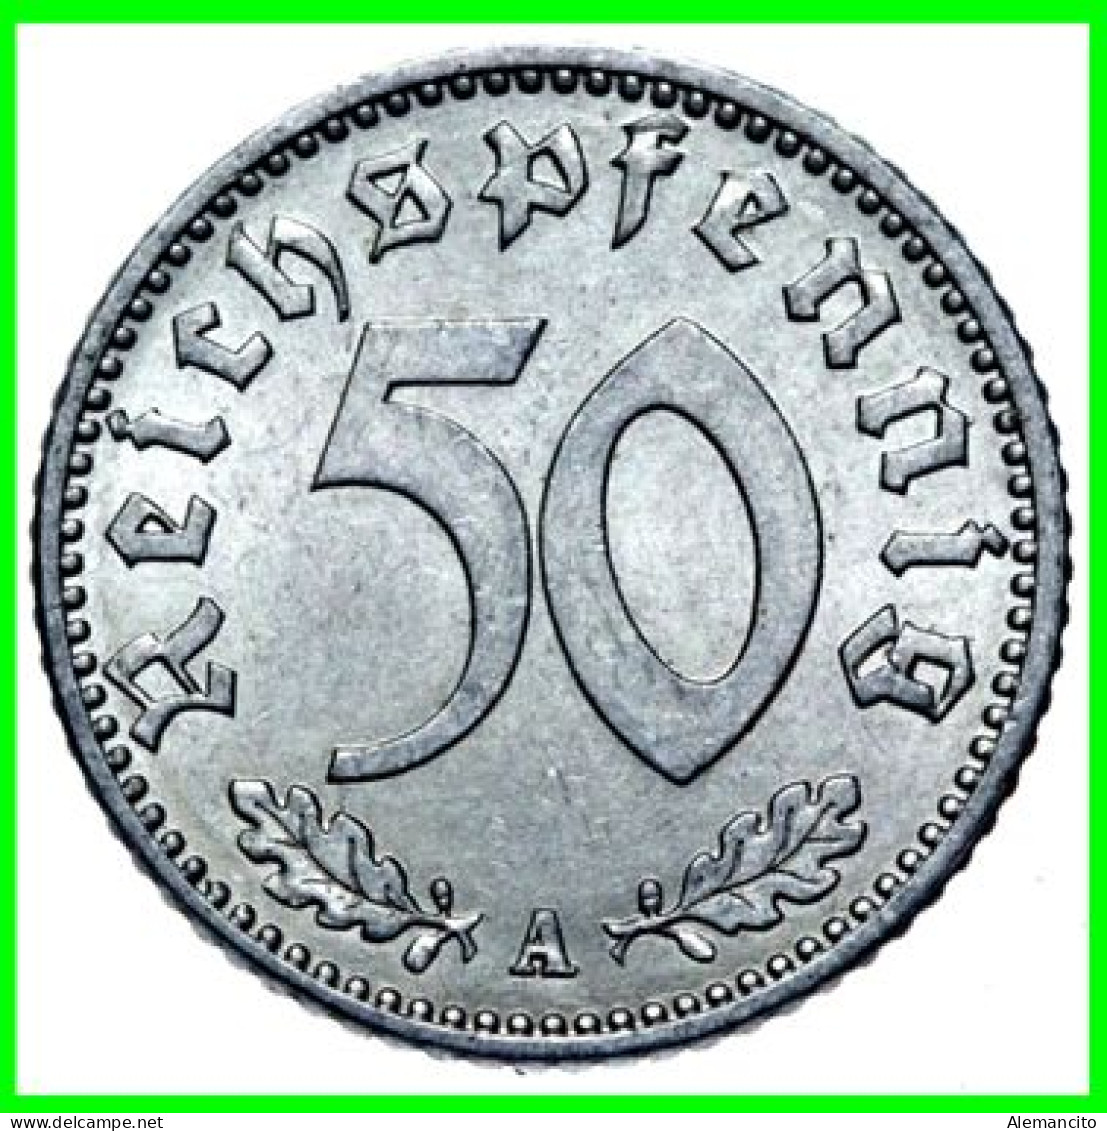 GERMANY - ALEMANIA DEUTFCHES REICH SERIE DE 6 MONEDAS DE 0.50 REICHSPFENNIG AÑO 1942 – KM 96 ( SERIE COMPLETA 6 CECAS ) - 50 Reichspfennig